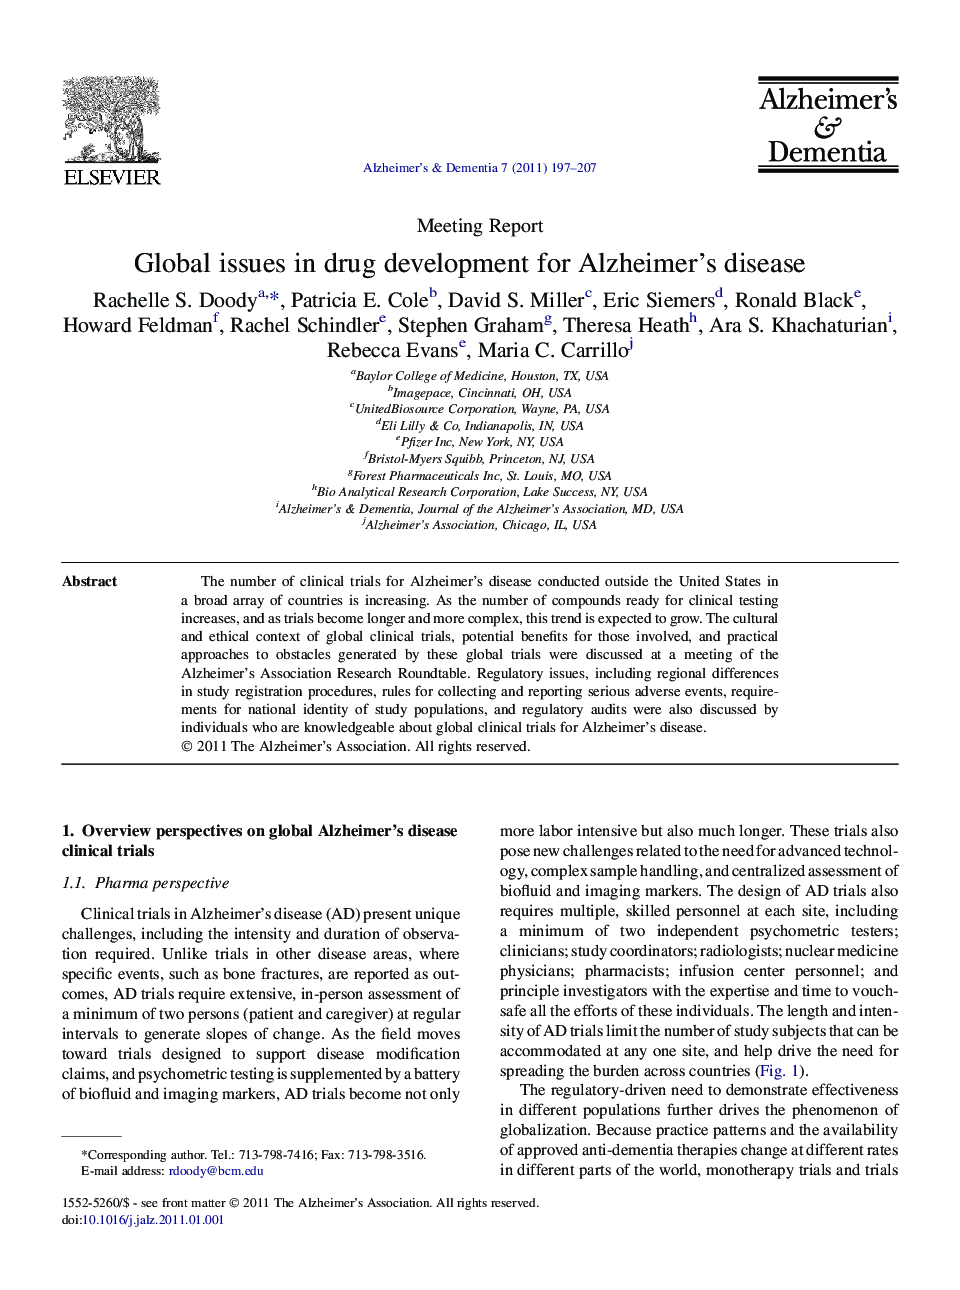 Meeting ReportGlobal issues in drug development for Alzheimer's disease